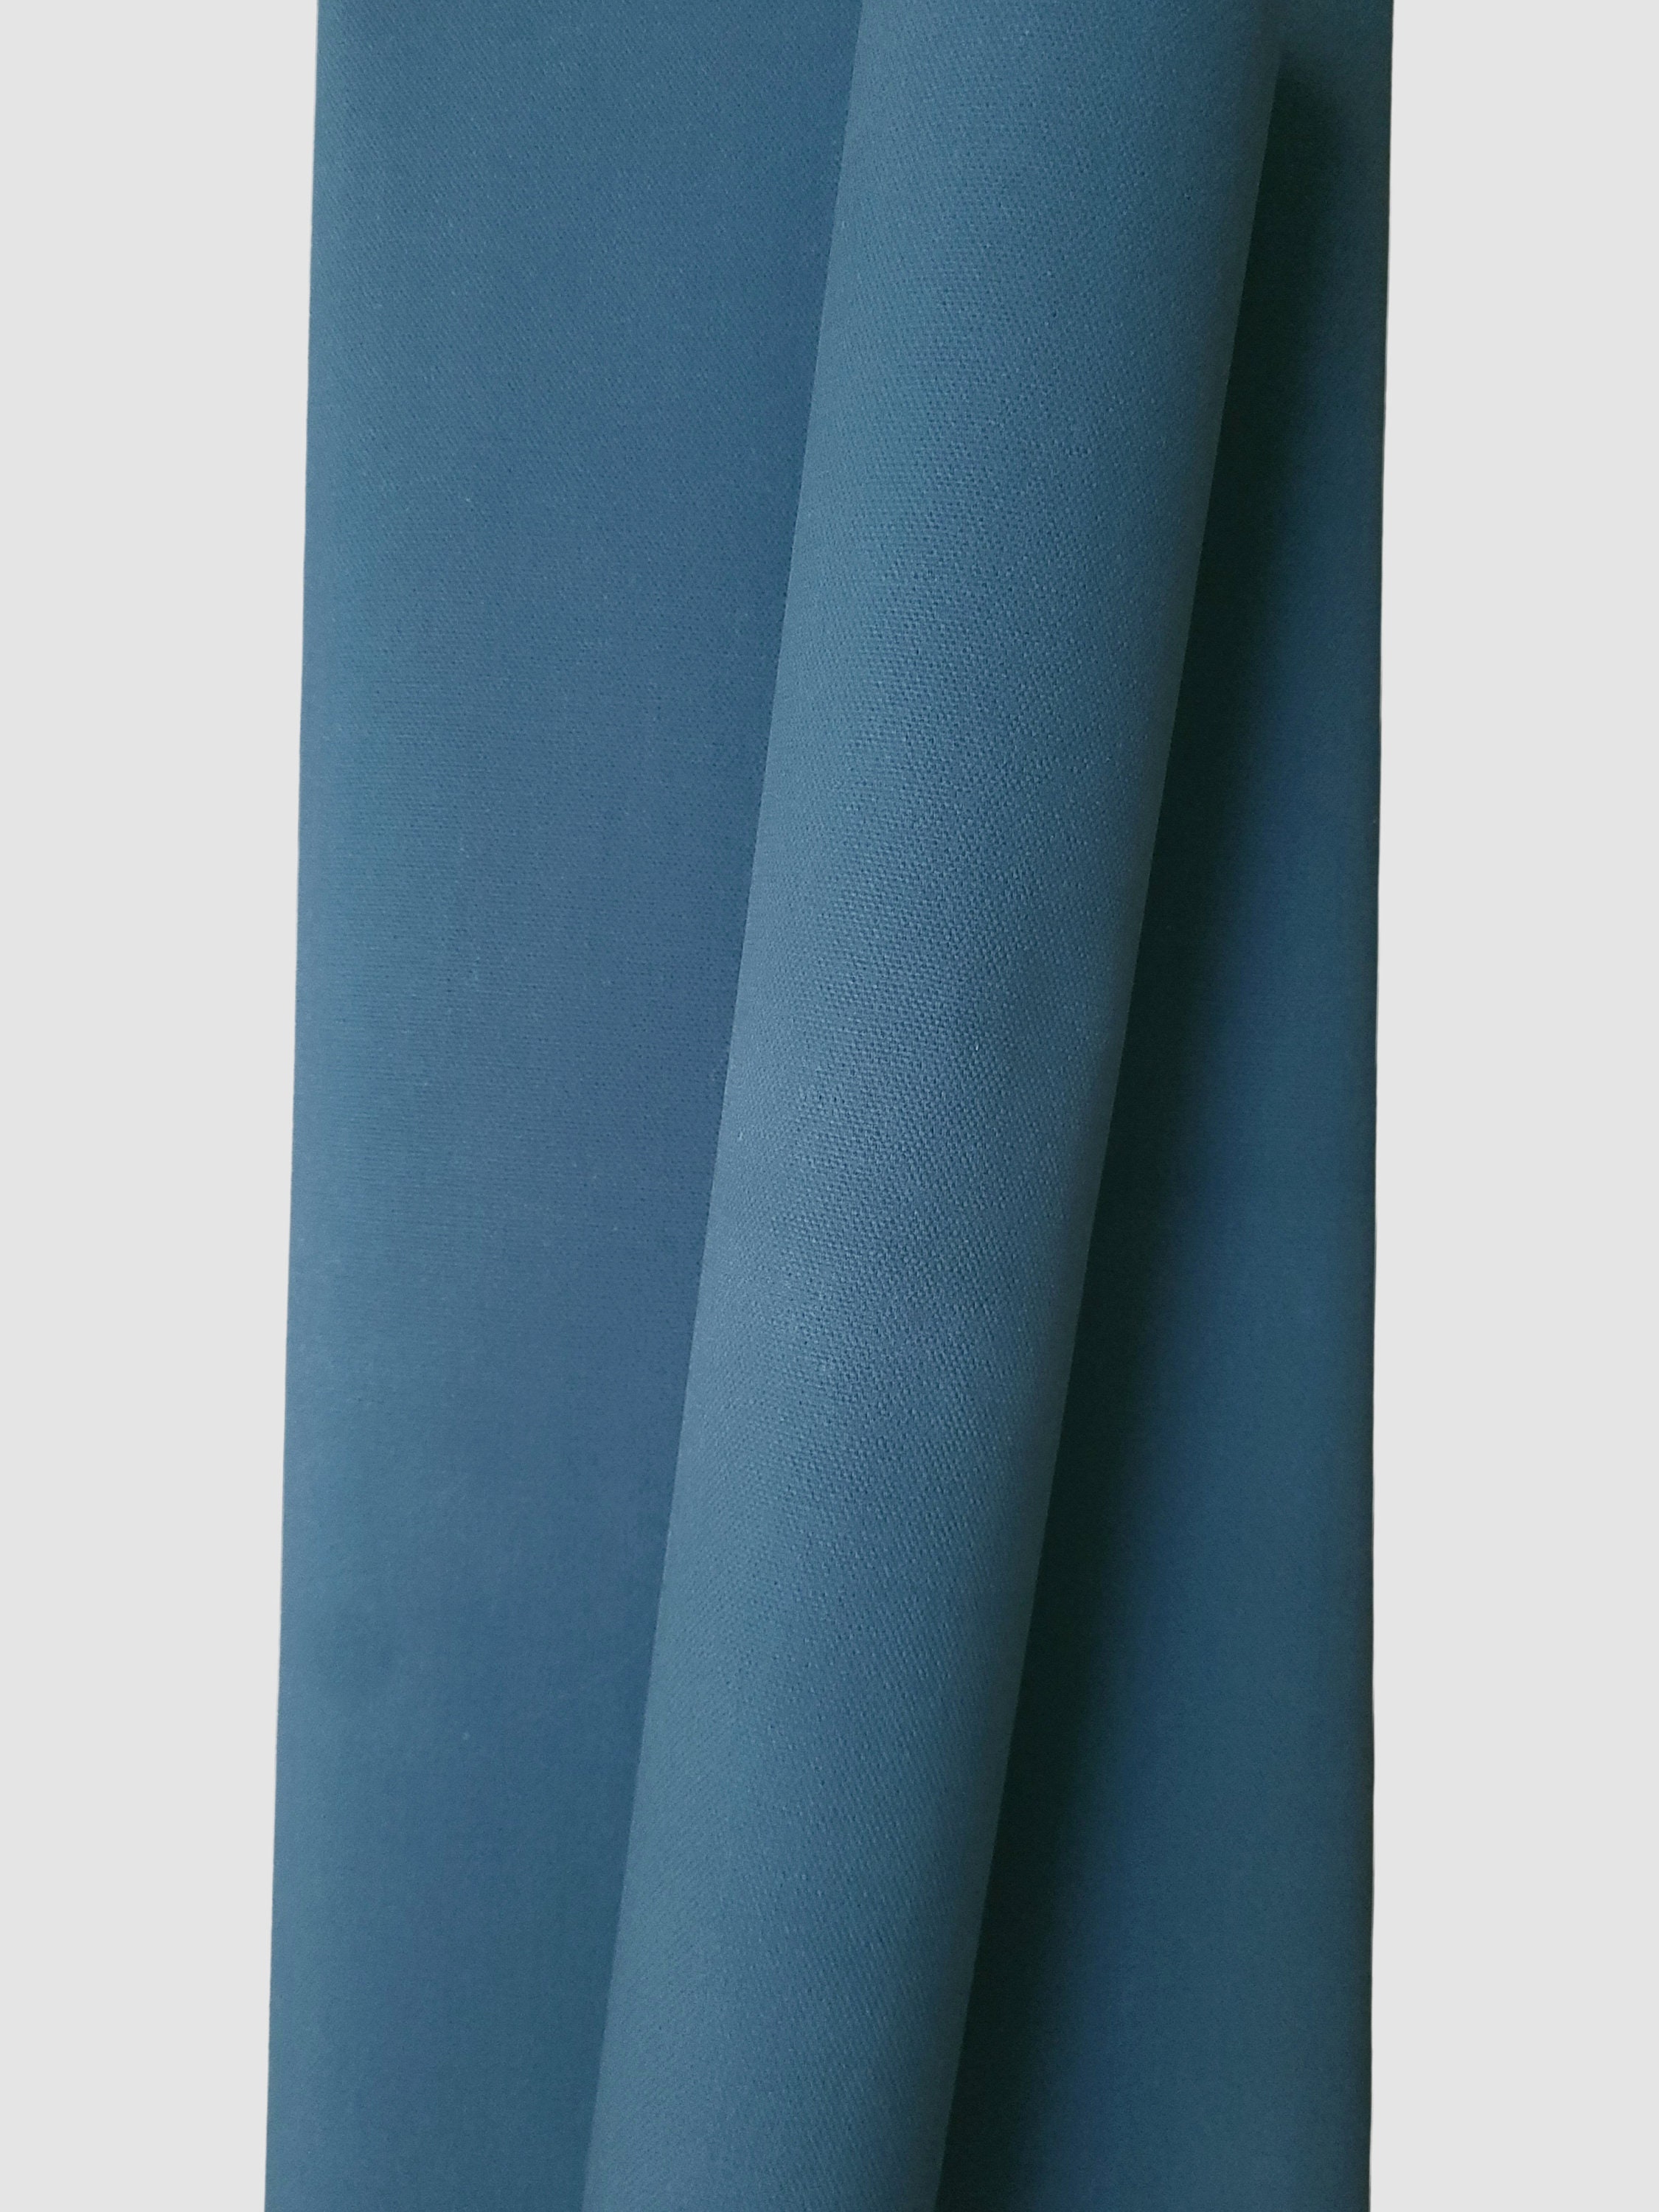 Waxed Canvas Fabric, 16oz Hand Waxed Cotton Canvas Fabric, Hand Waxed  Beeswax Fabric, Sold by the Half Yard 